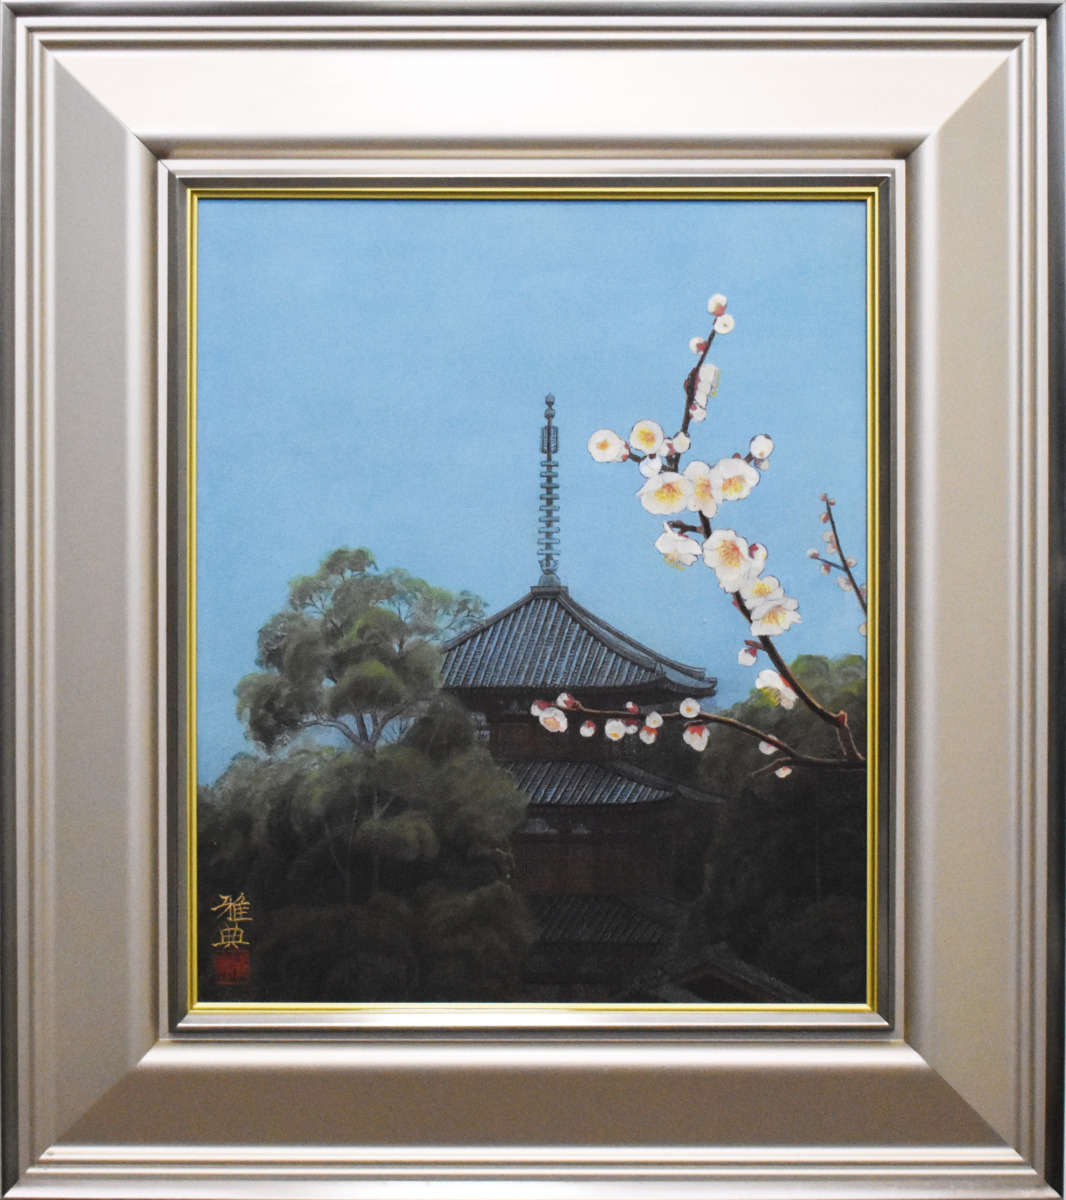 [Галерея Масамицу / 5000 экспонатов на выставке] Найдена редкая работа Японская картина Масанори Шинода Икаруга ранней весной 8F, рисование, Японская живопись, пейзаж, Фугецу